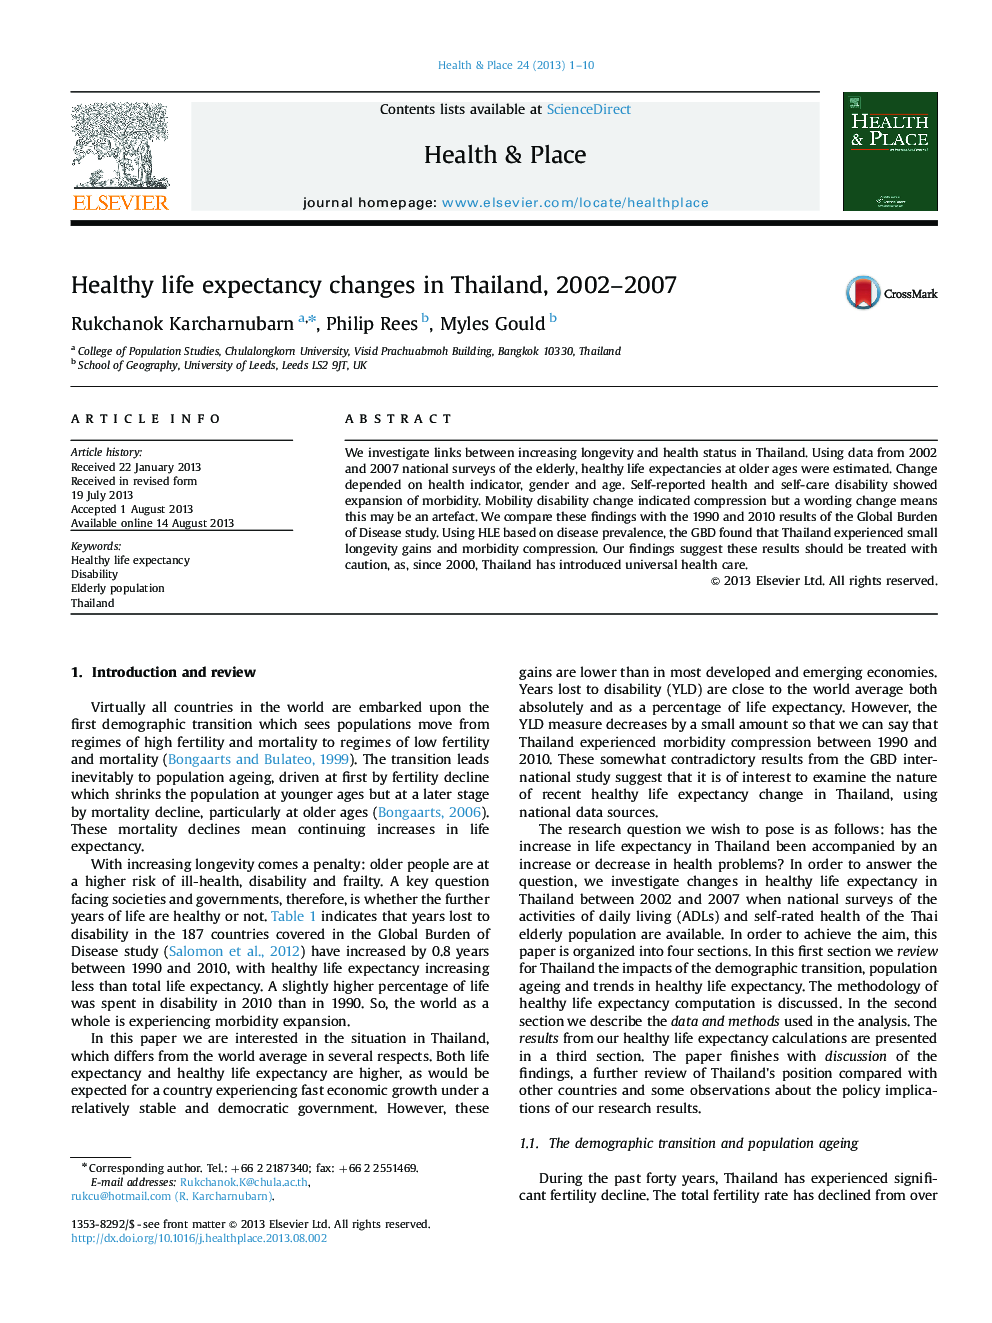 تغییرات امید به زندگی سالم در تایلند، 2002-2007 